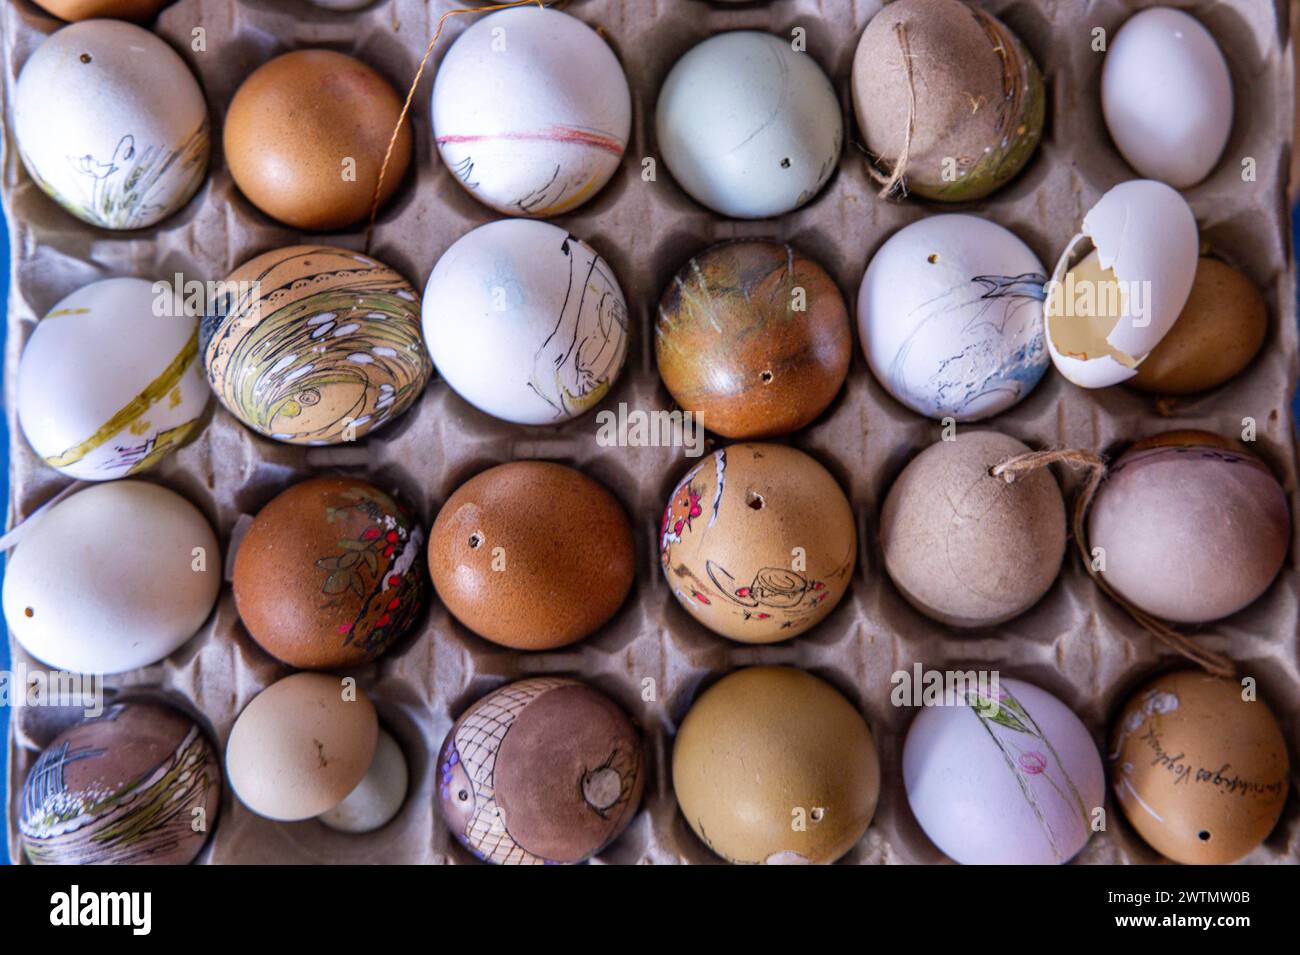 Schwerin, Germania. 18 marzo 2024. Varie uova si trovano nella sala di pittura dell'artista uovo Ines Höfs. Prima di Pasqua, la richiesta di motivi colorati sulle uova è particolarmente elevata. Dalle uova di piccione alle uova di struzzo vuote, tutto si trasforma in decorazioni pasquali nel piccolo studio di pittura. Ines Höfs dipinge le uova tutto l'anno ed espone le opere d'arte in musei o le vende nel suo negozio online o nei mercati. Crediti: Jens Büttner/dpa/Alamy Live News Foto Stock